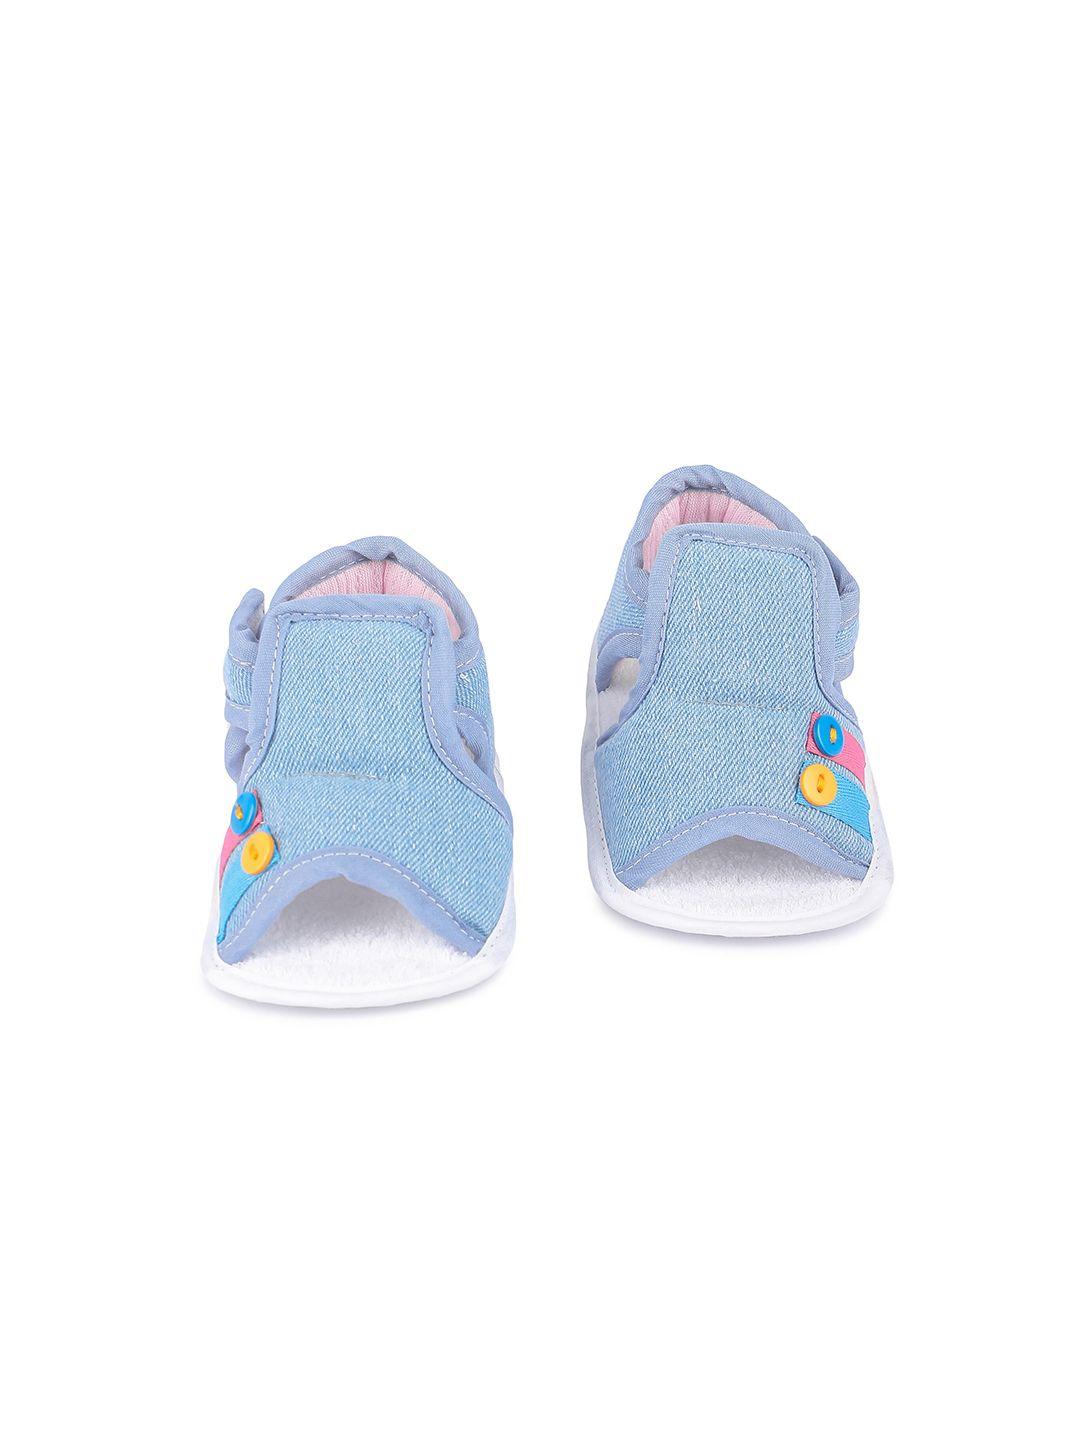 butterthief unisex infant kids blue comfort sandals